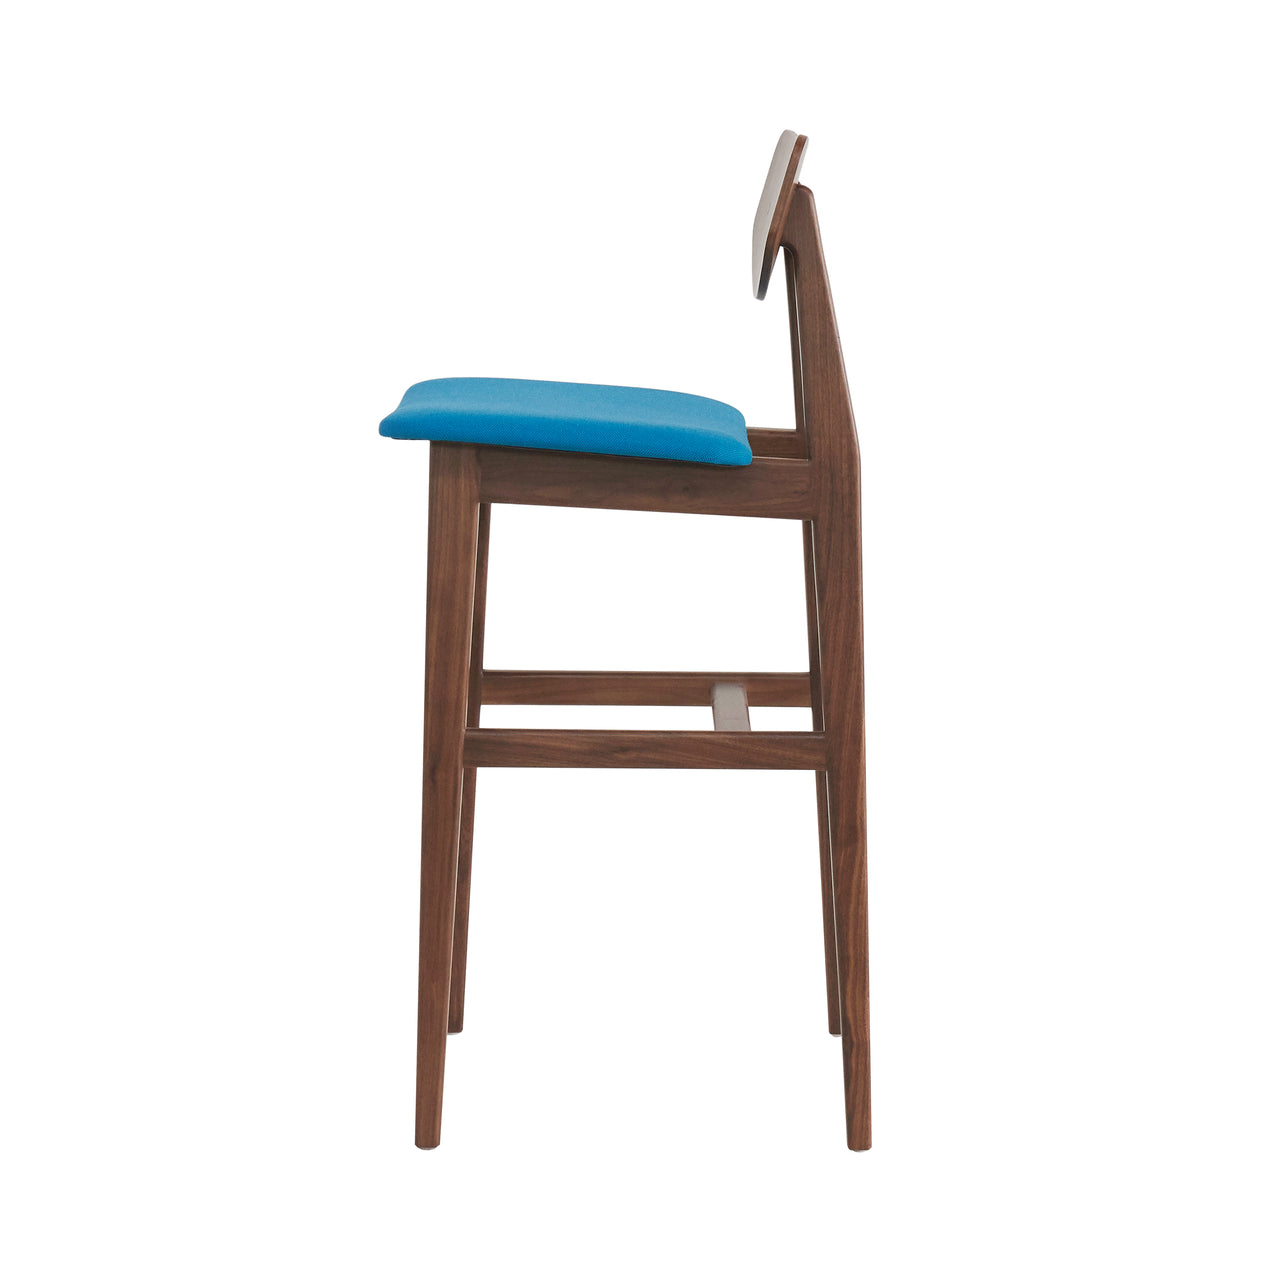 Risom C375 Chair: Natural Walnut